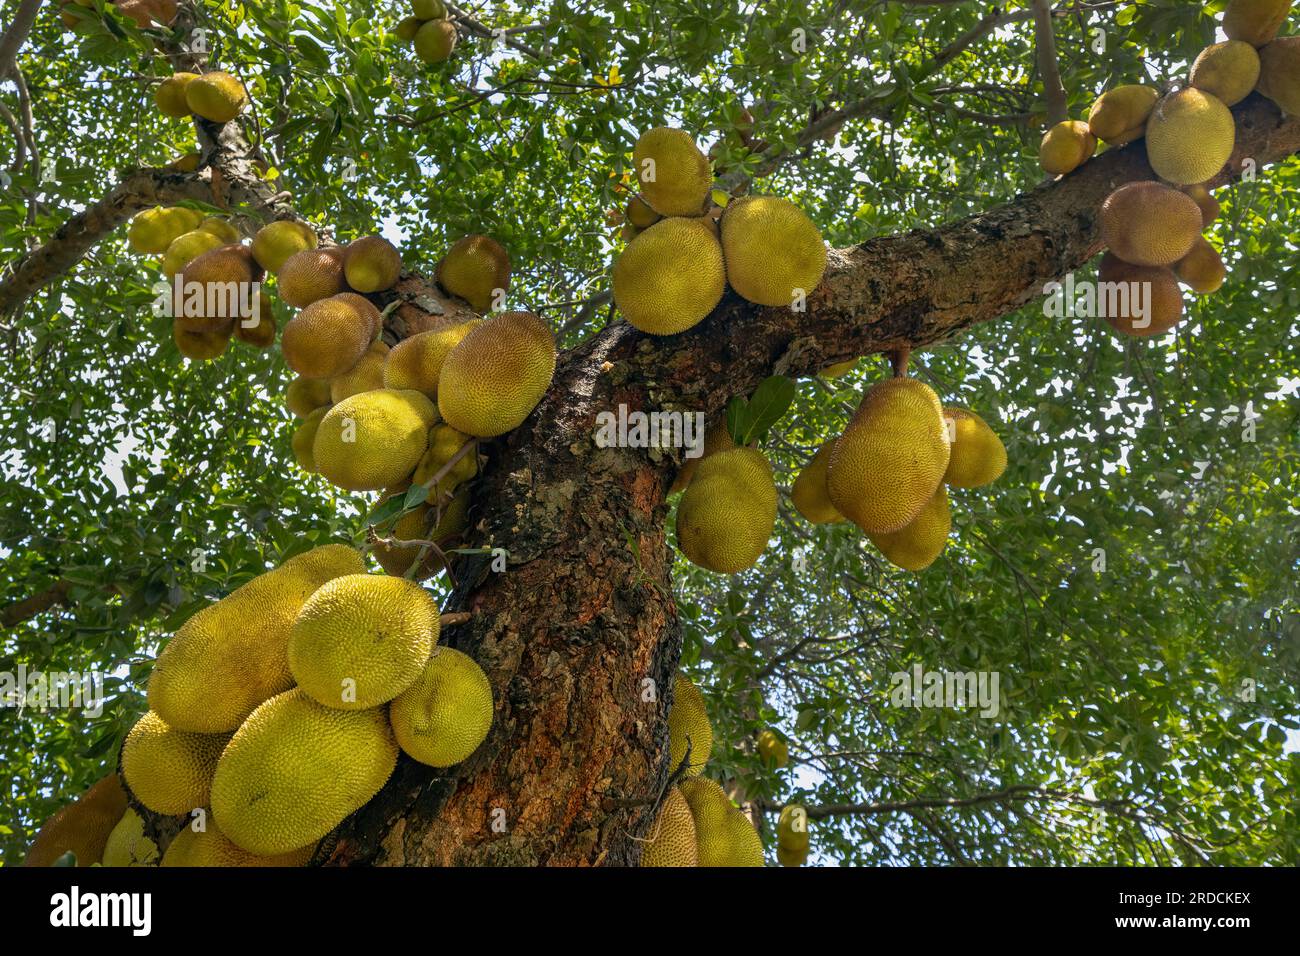 Jackfruit-Marketing auf dem Großhandelsbasar Stockfoto